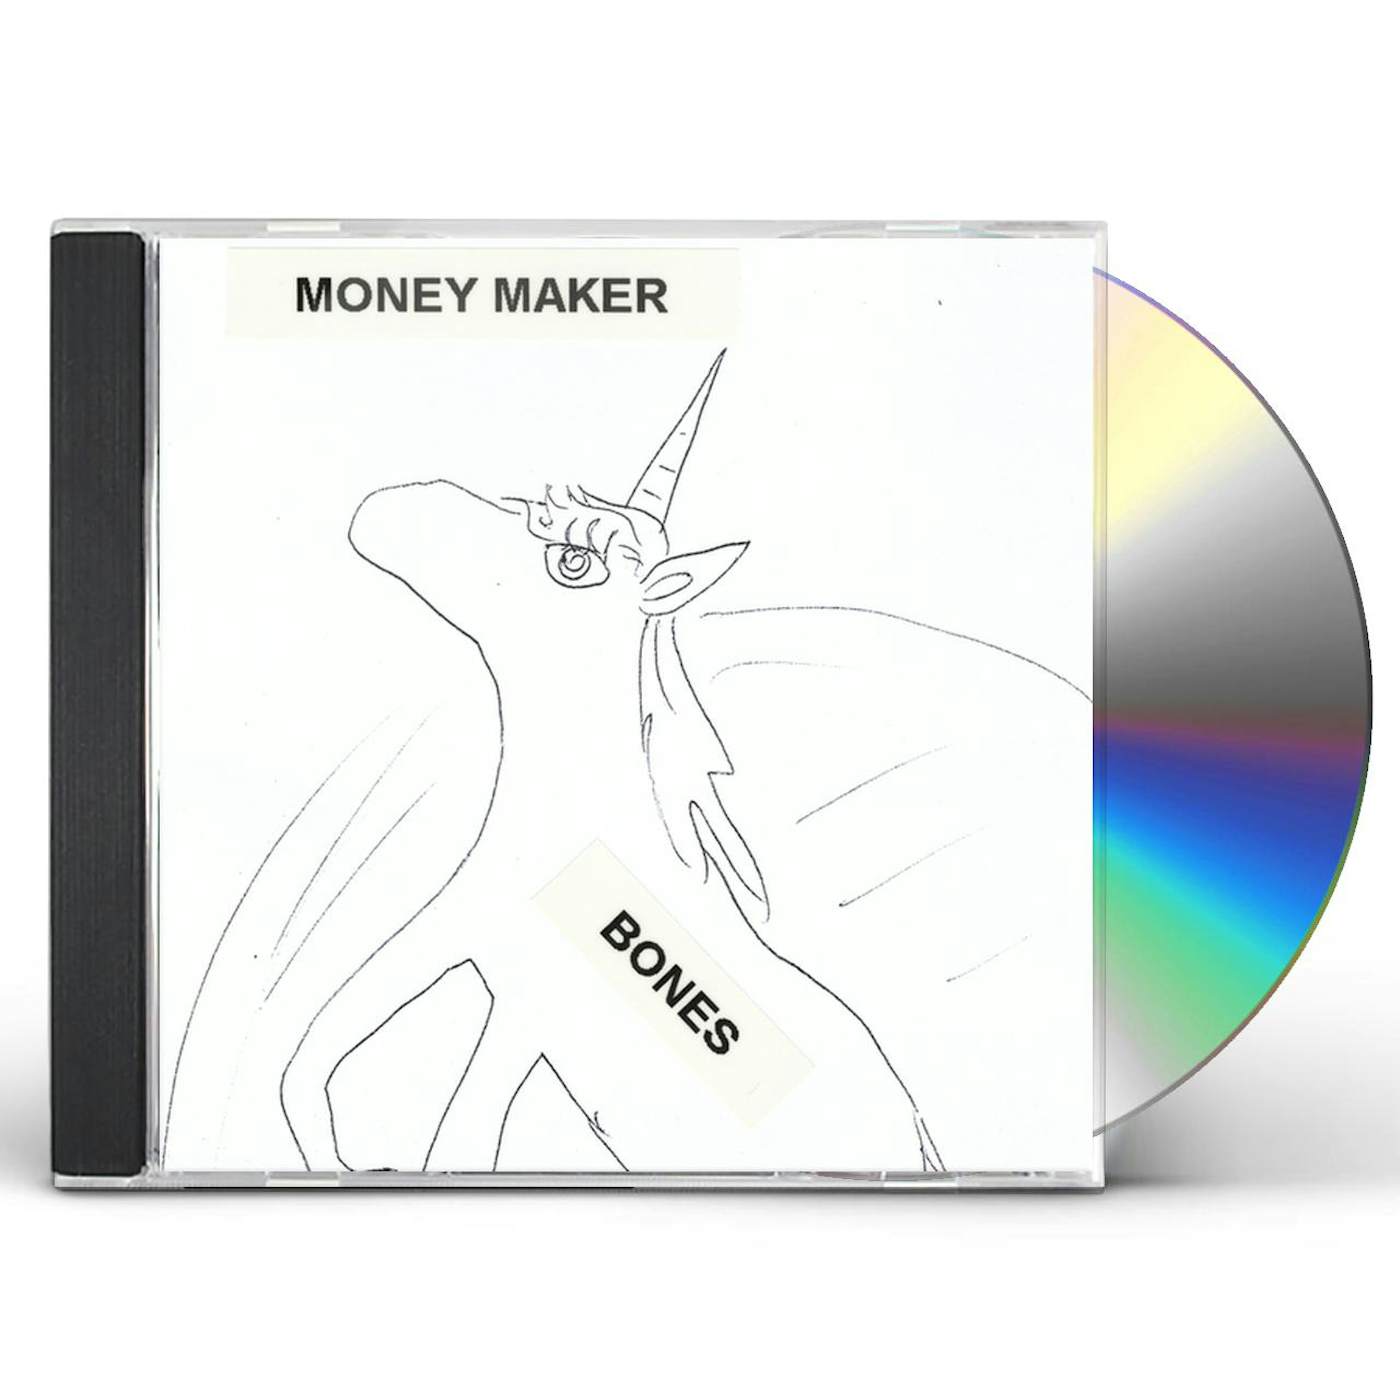 The Bones MONEY MAKER CD